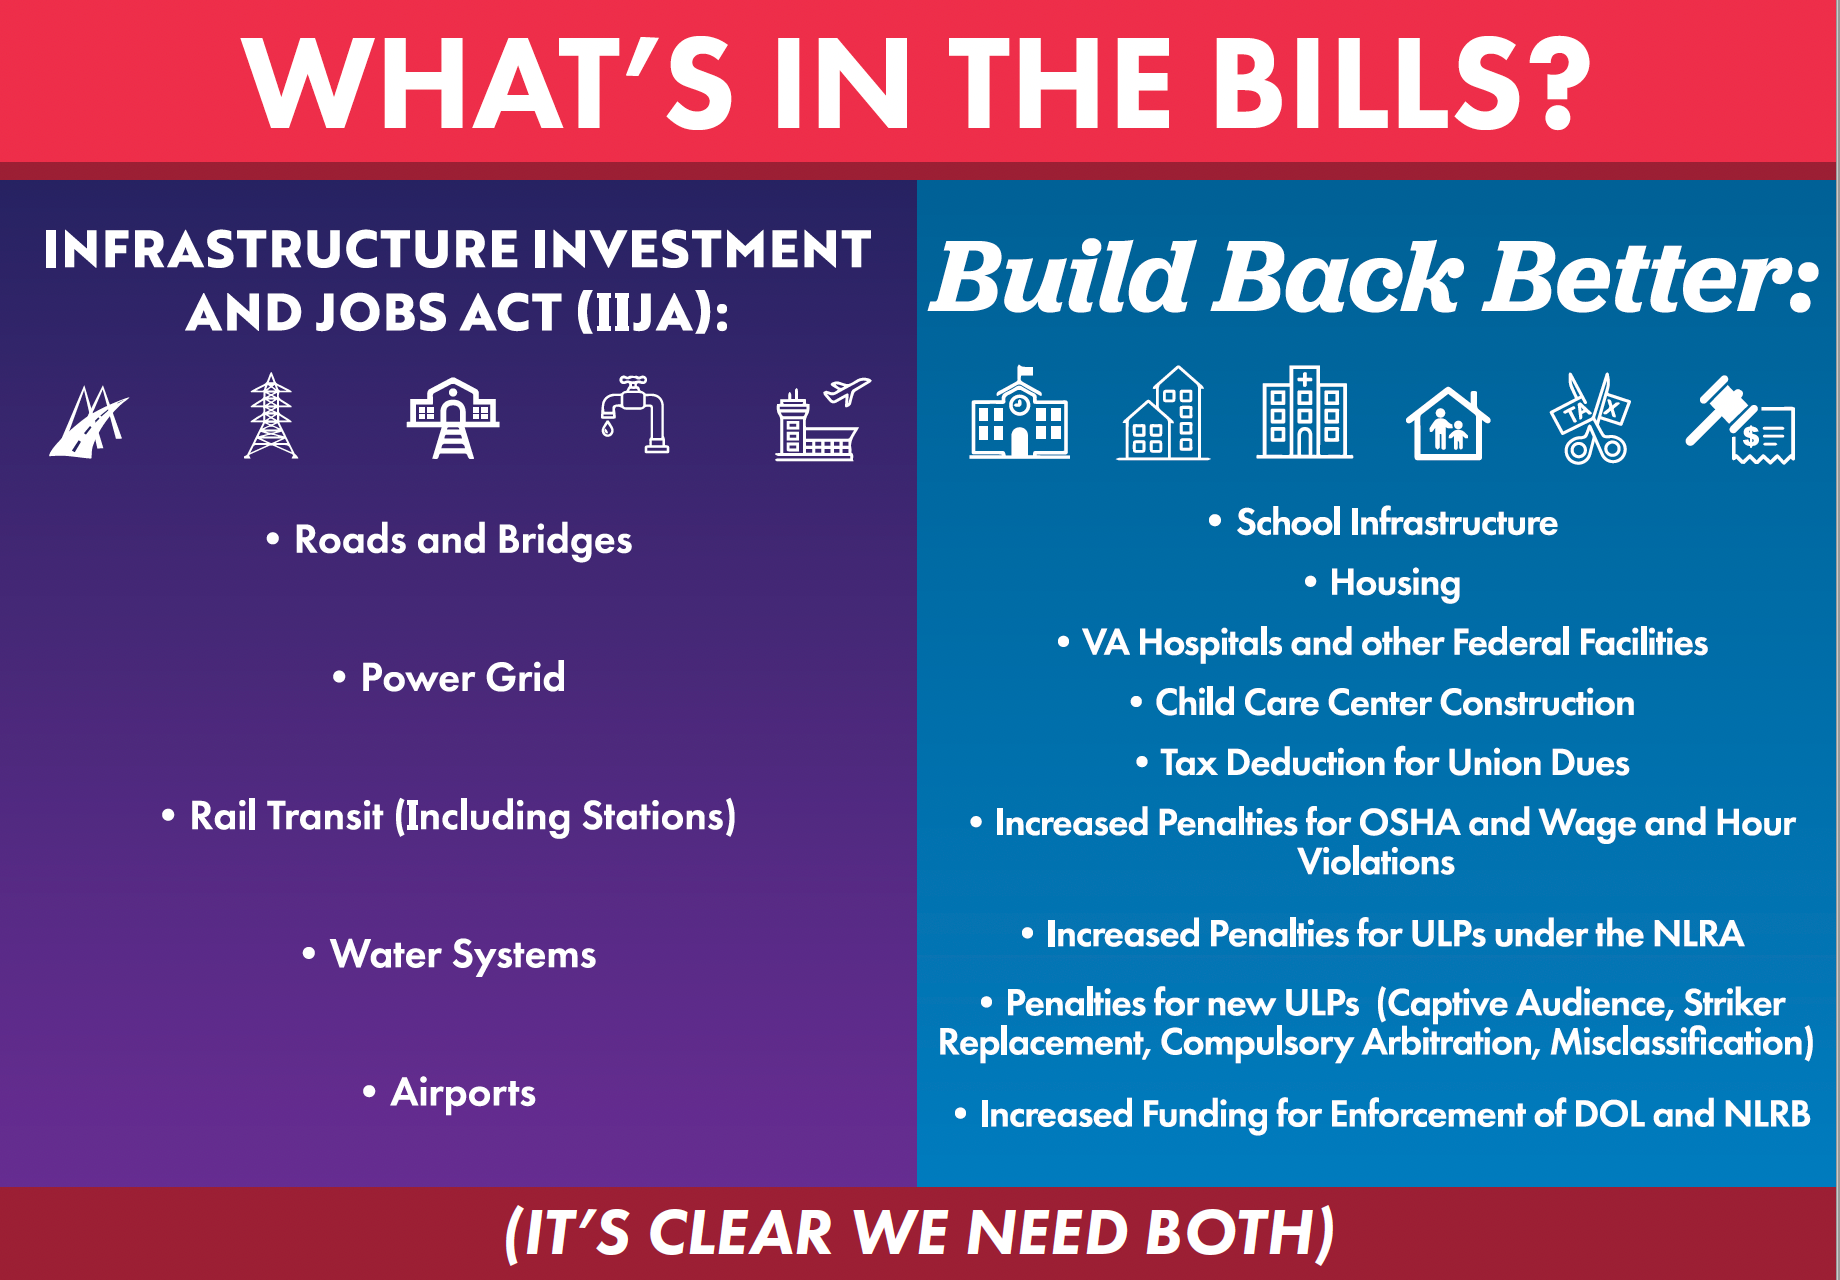 Infrastructure Bill